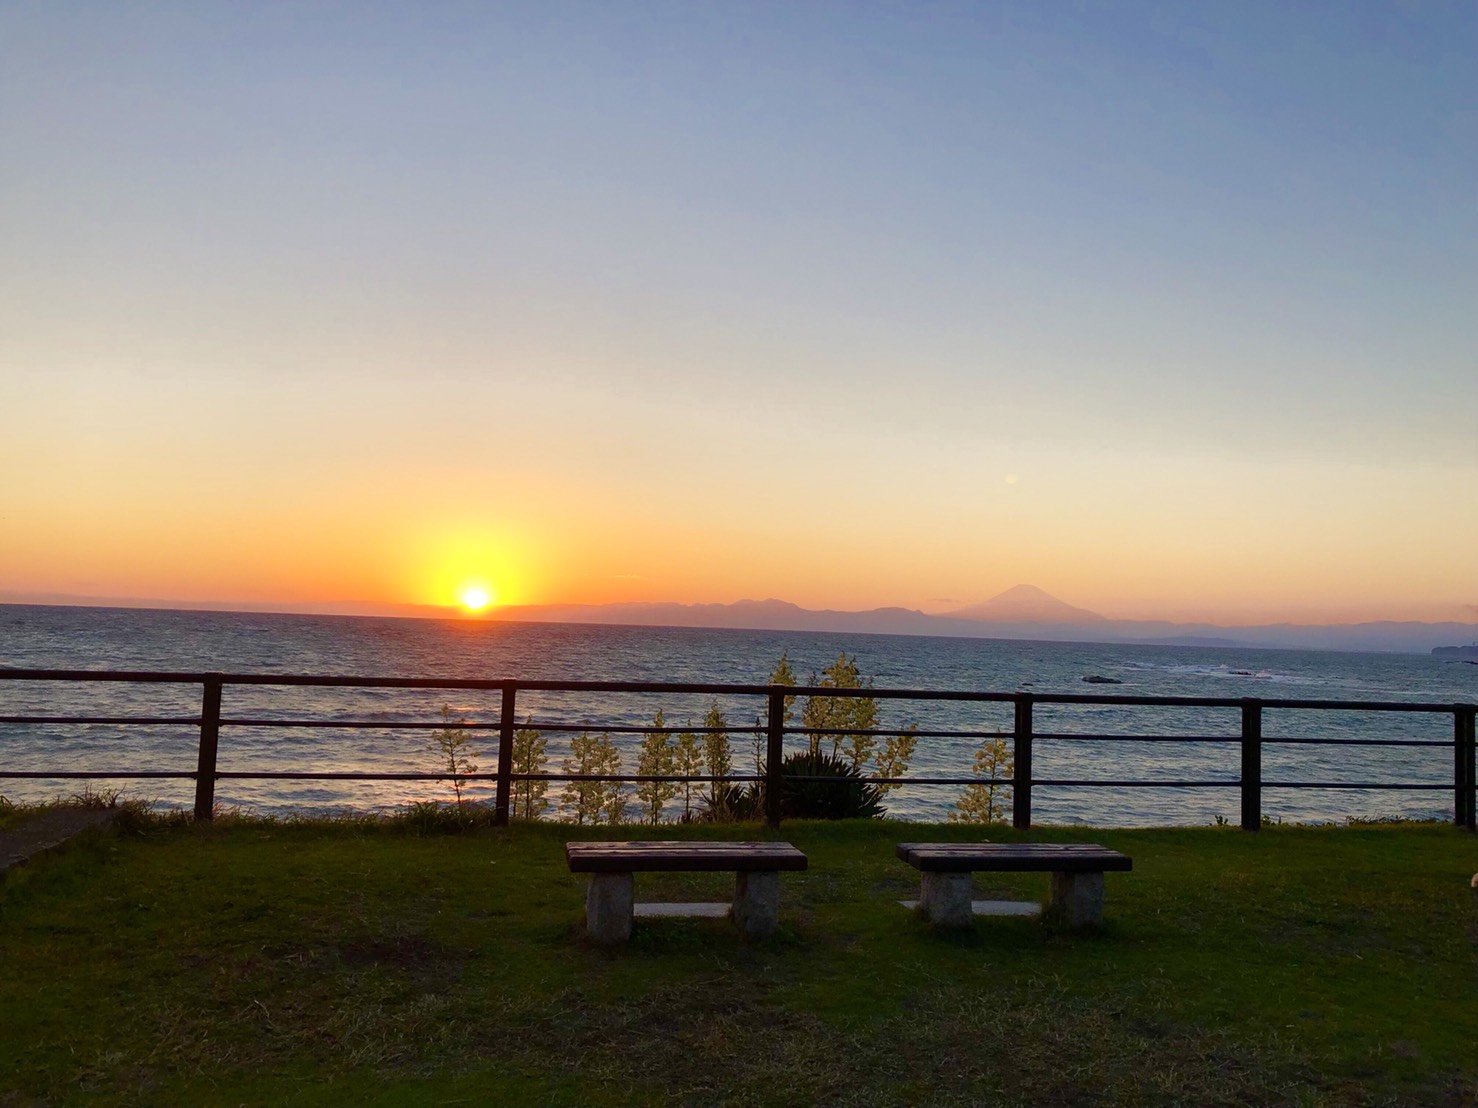 葉山公園から見える夕日。地平線に夕日が照らされ赤く染まっている